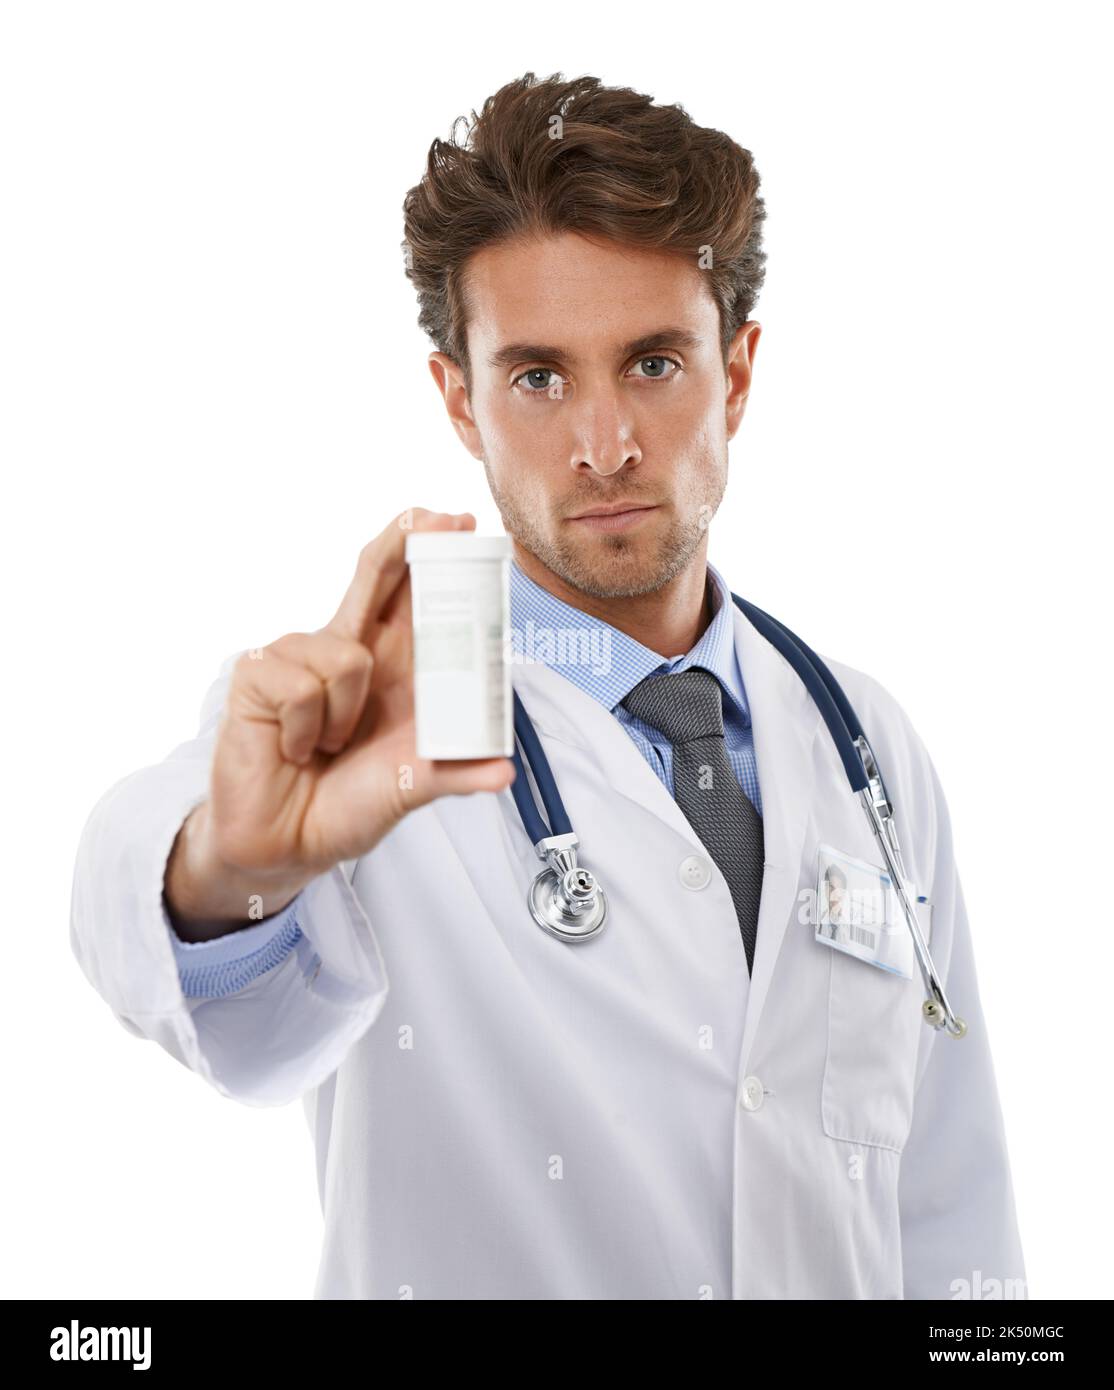 Nehmen Sie eine pro Tag ohne Ausnahme. Studioaufnahme eines ernsthaft aussehenden jungen Arztes, der eine Pillenflasche vor die Kamera hält. Stockfoto